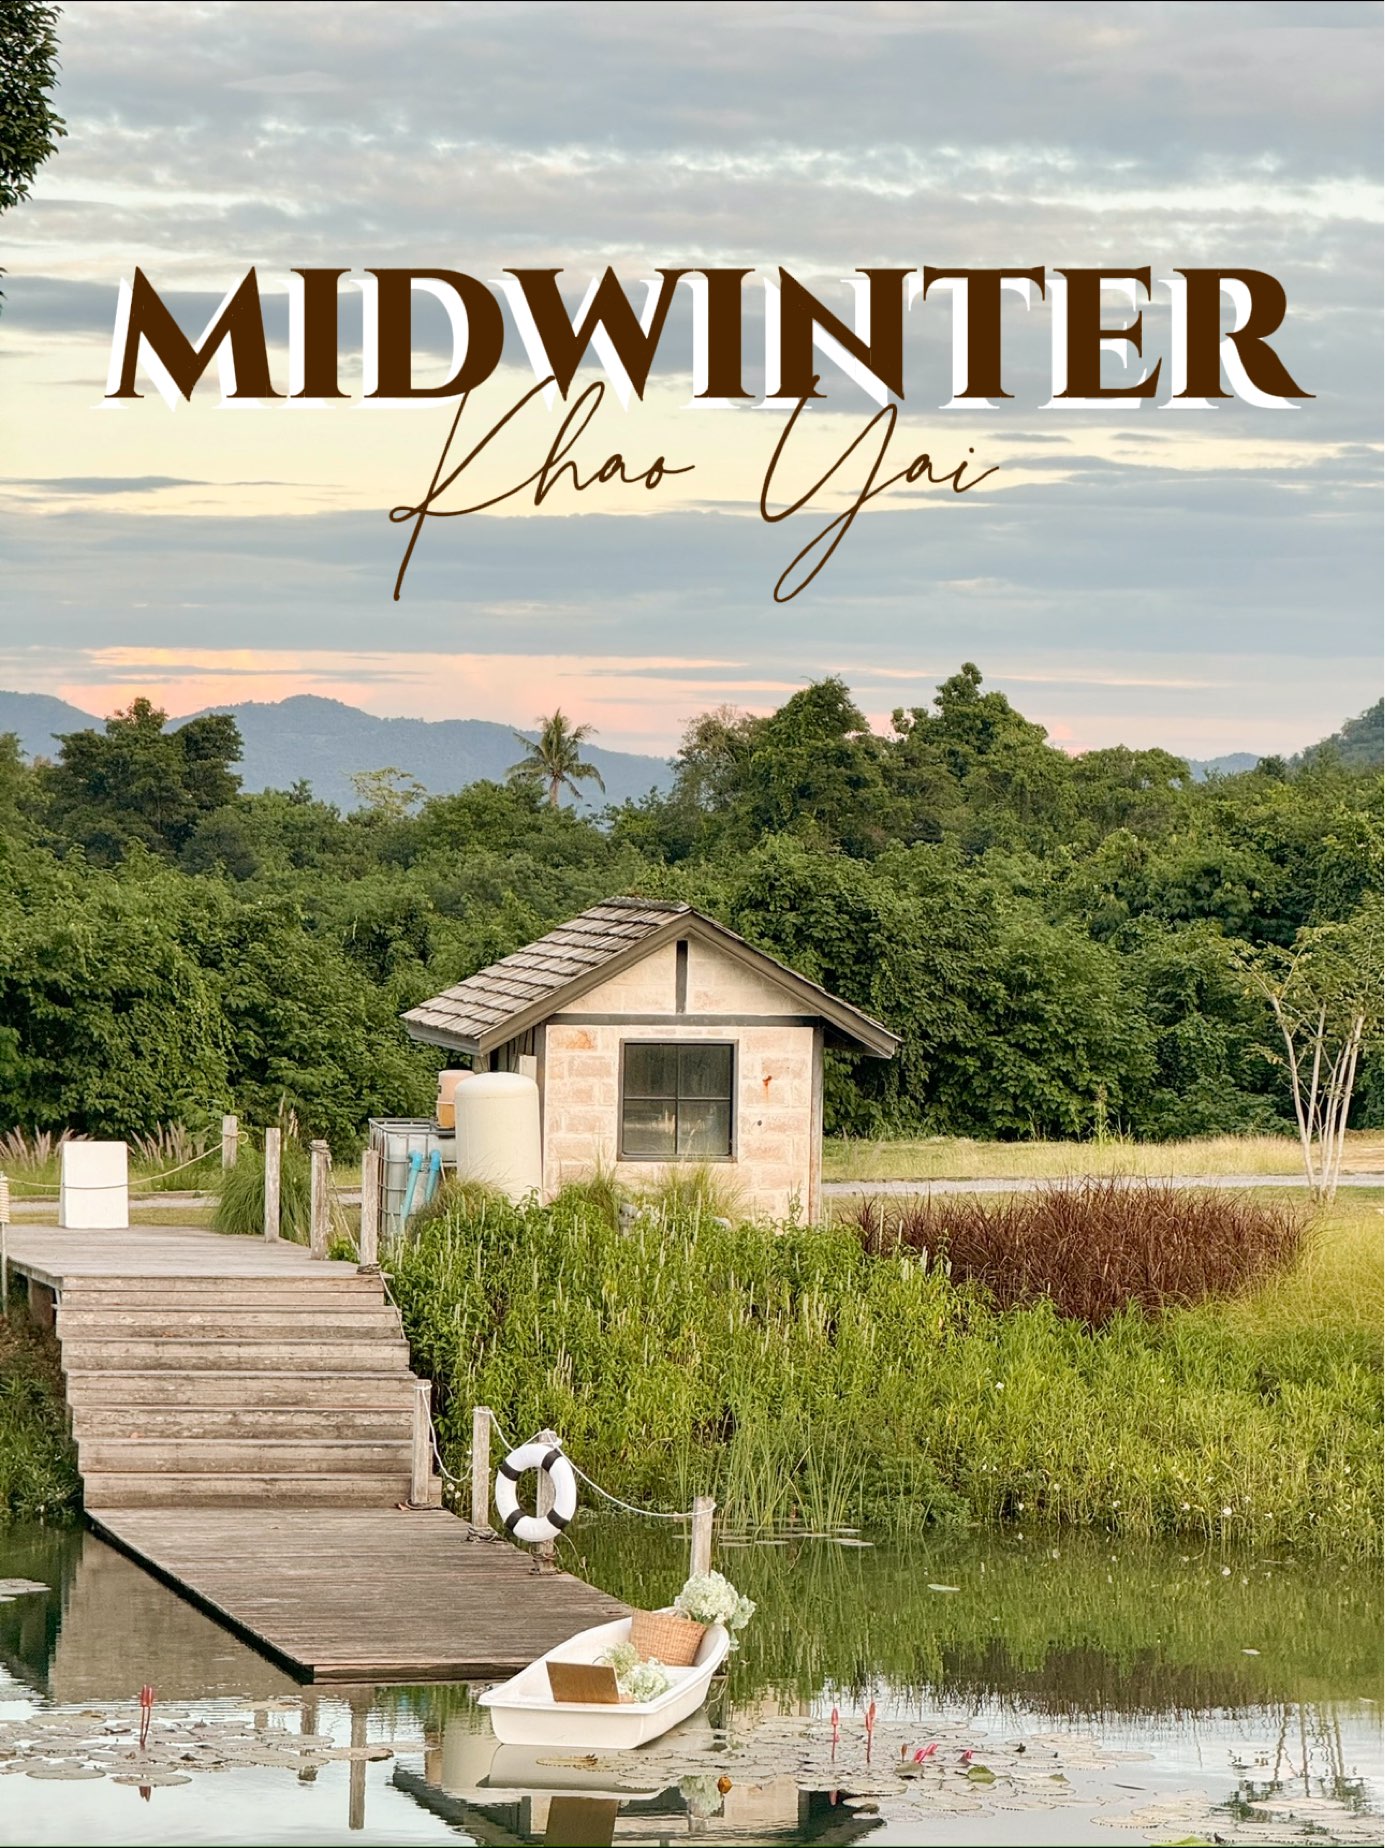 Midwinter Farm🪵 Khao Yai 露营风格